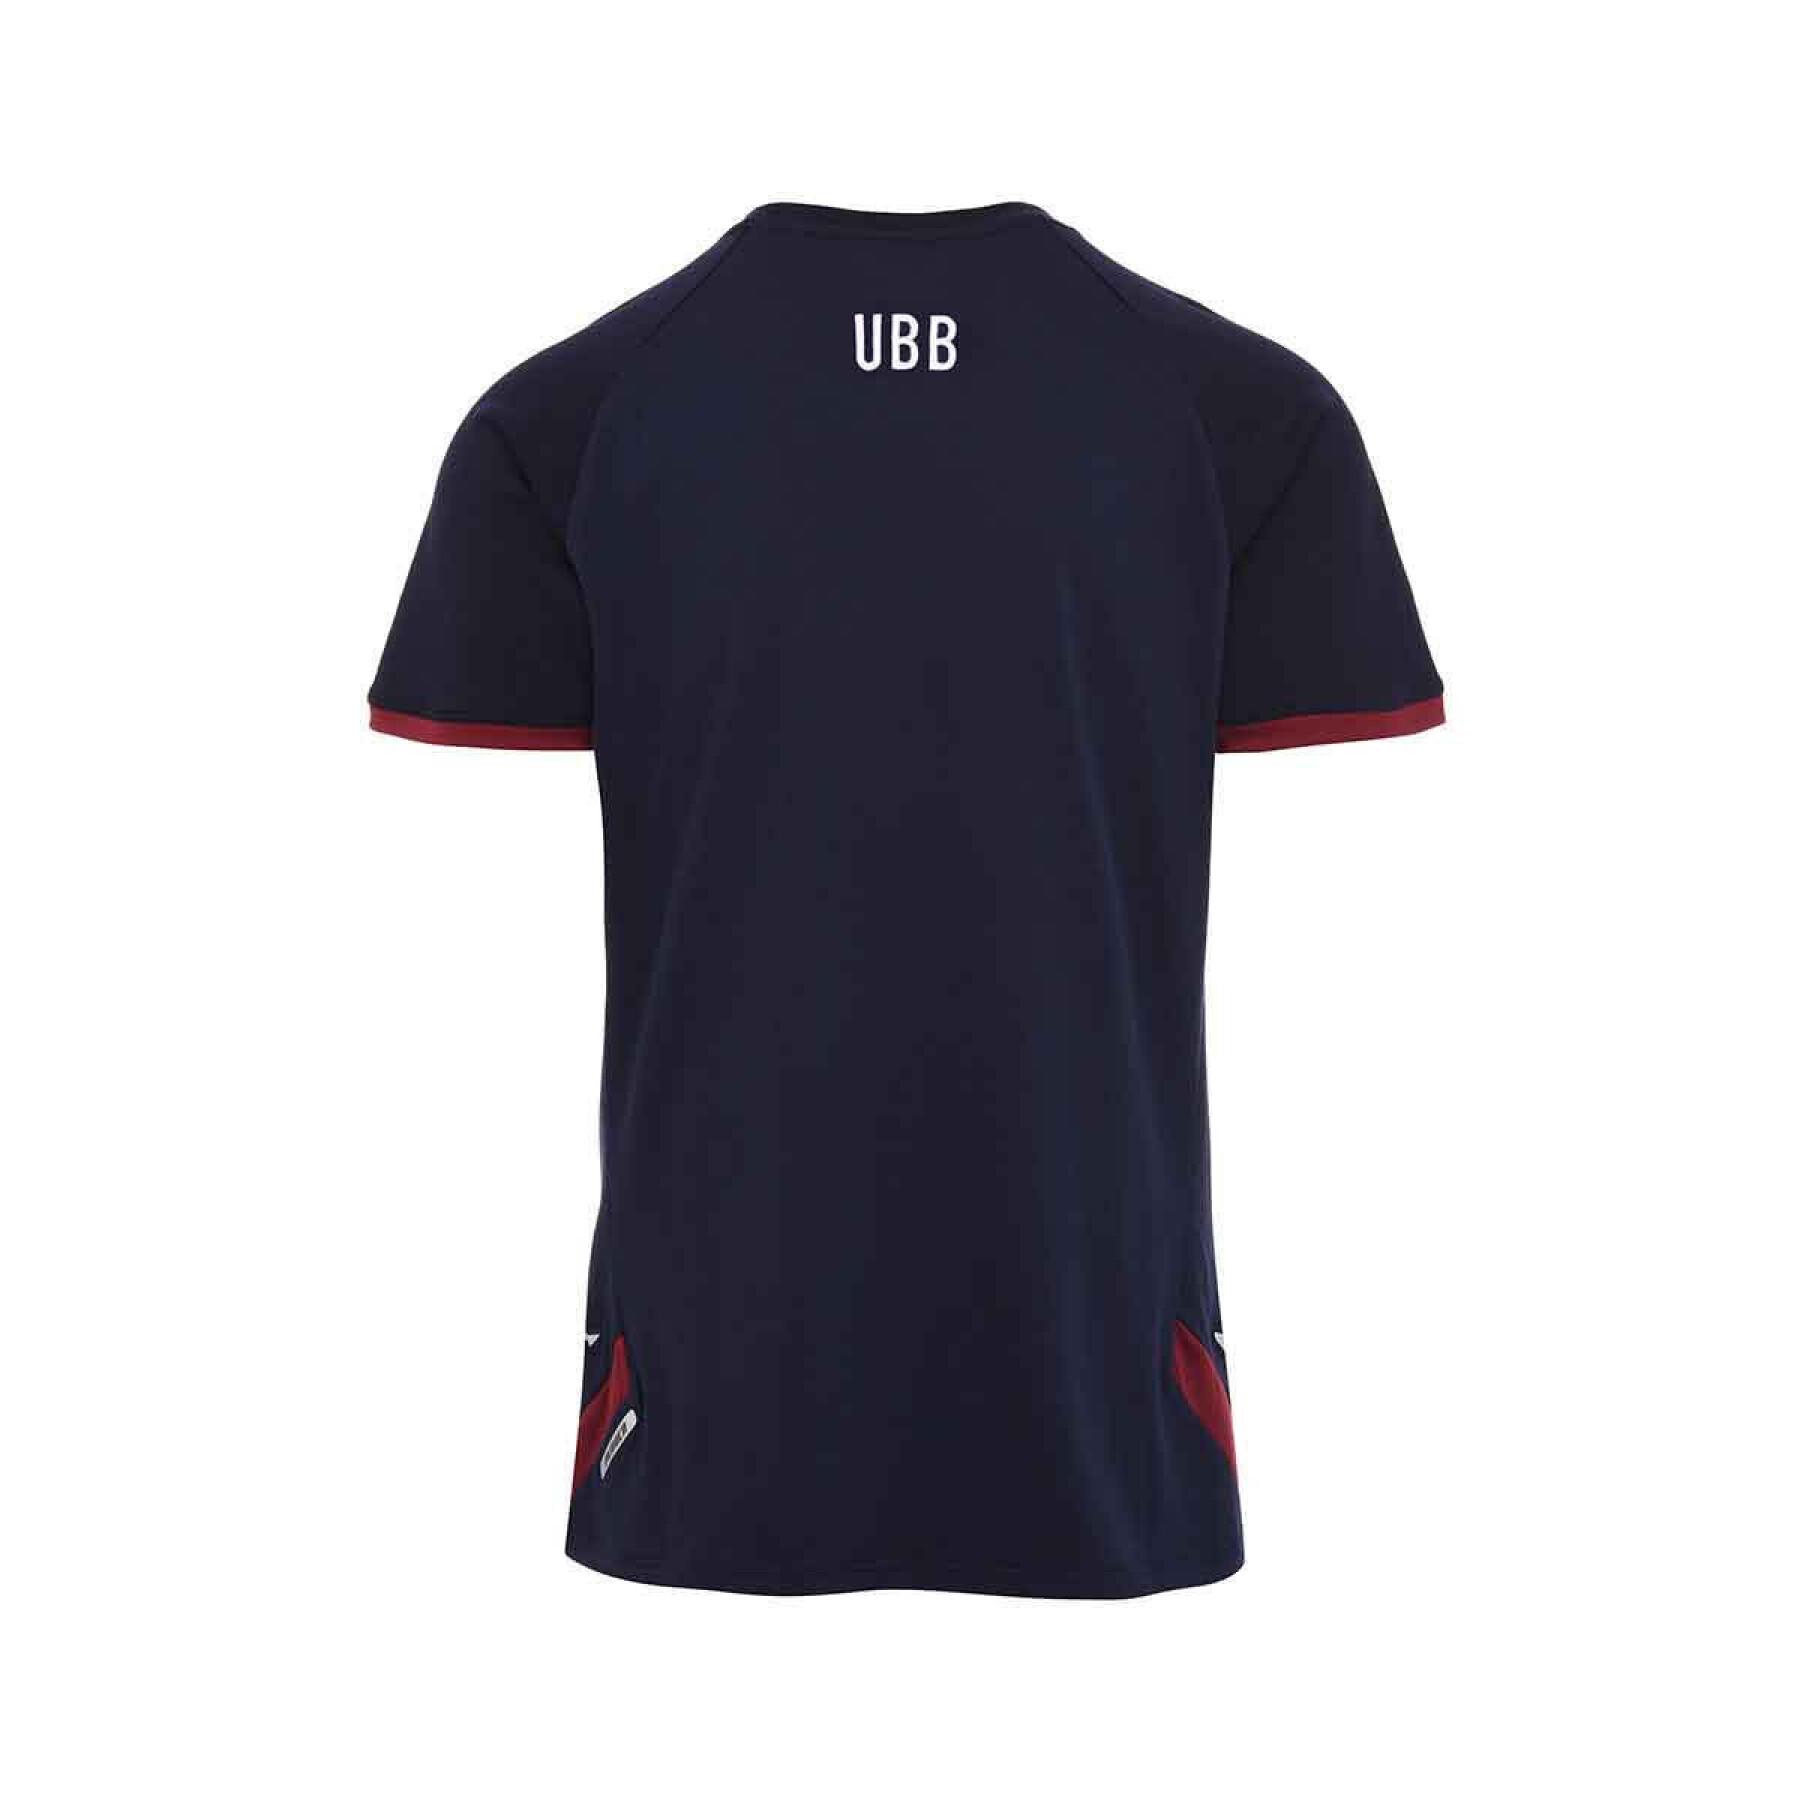 Child's T-shirt Union Bordeaux-Bègles 2022/23